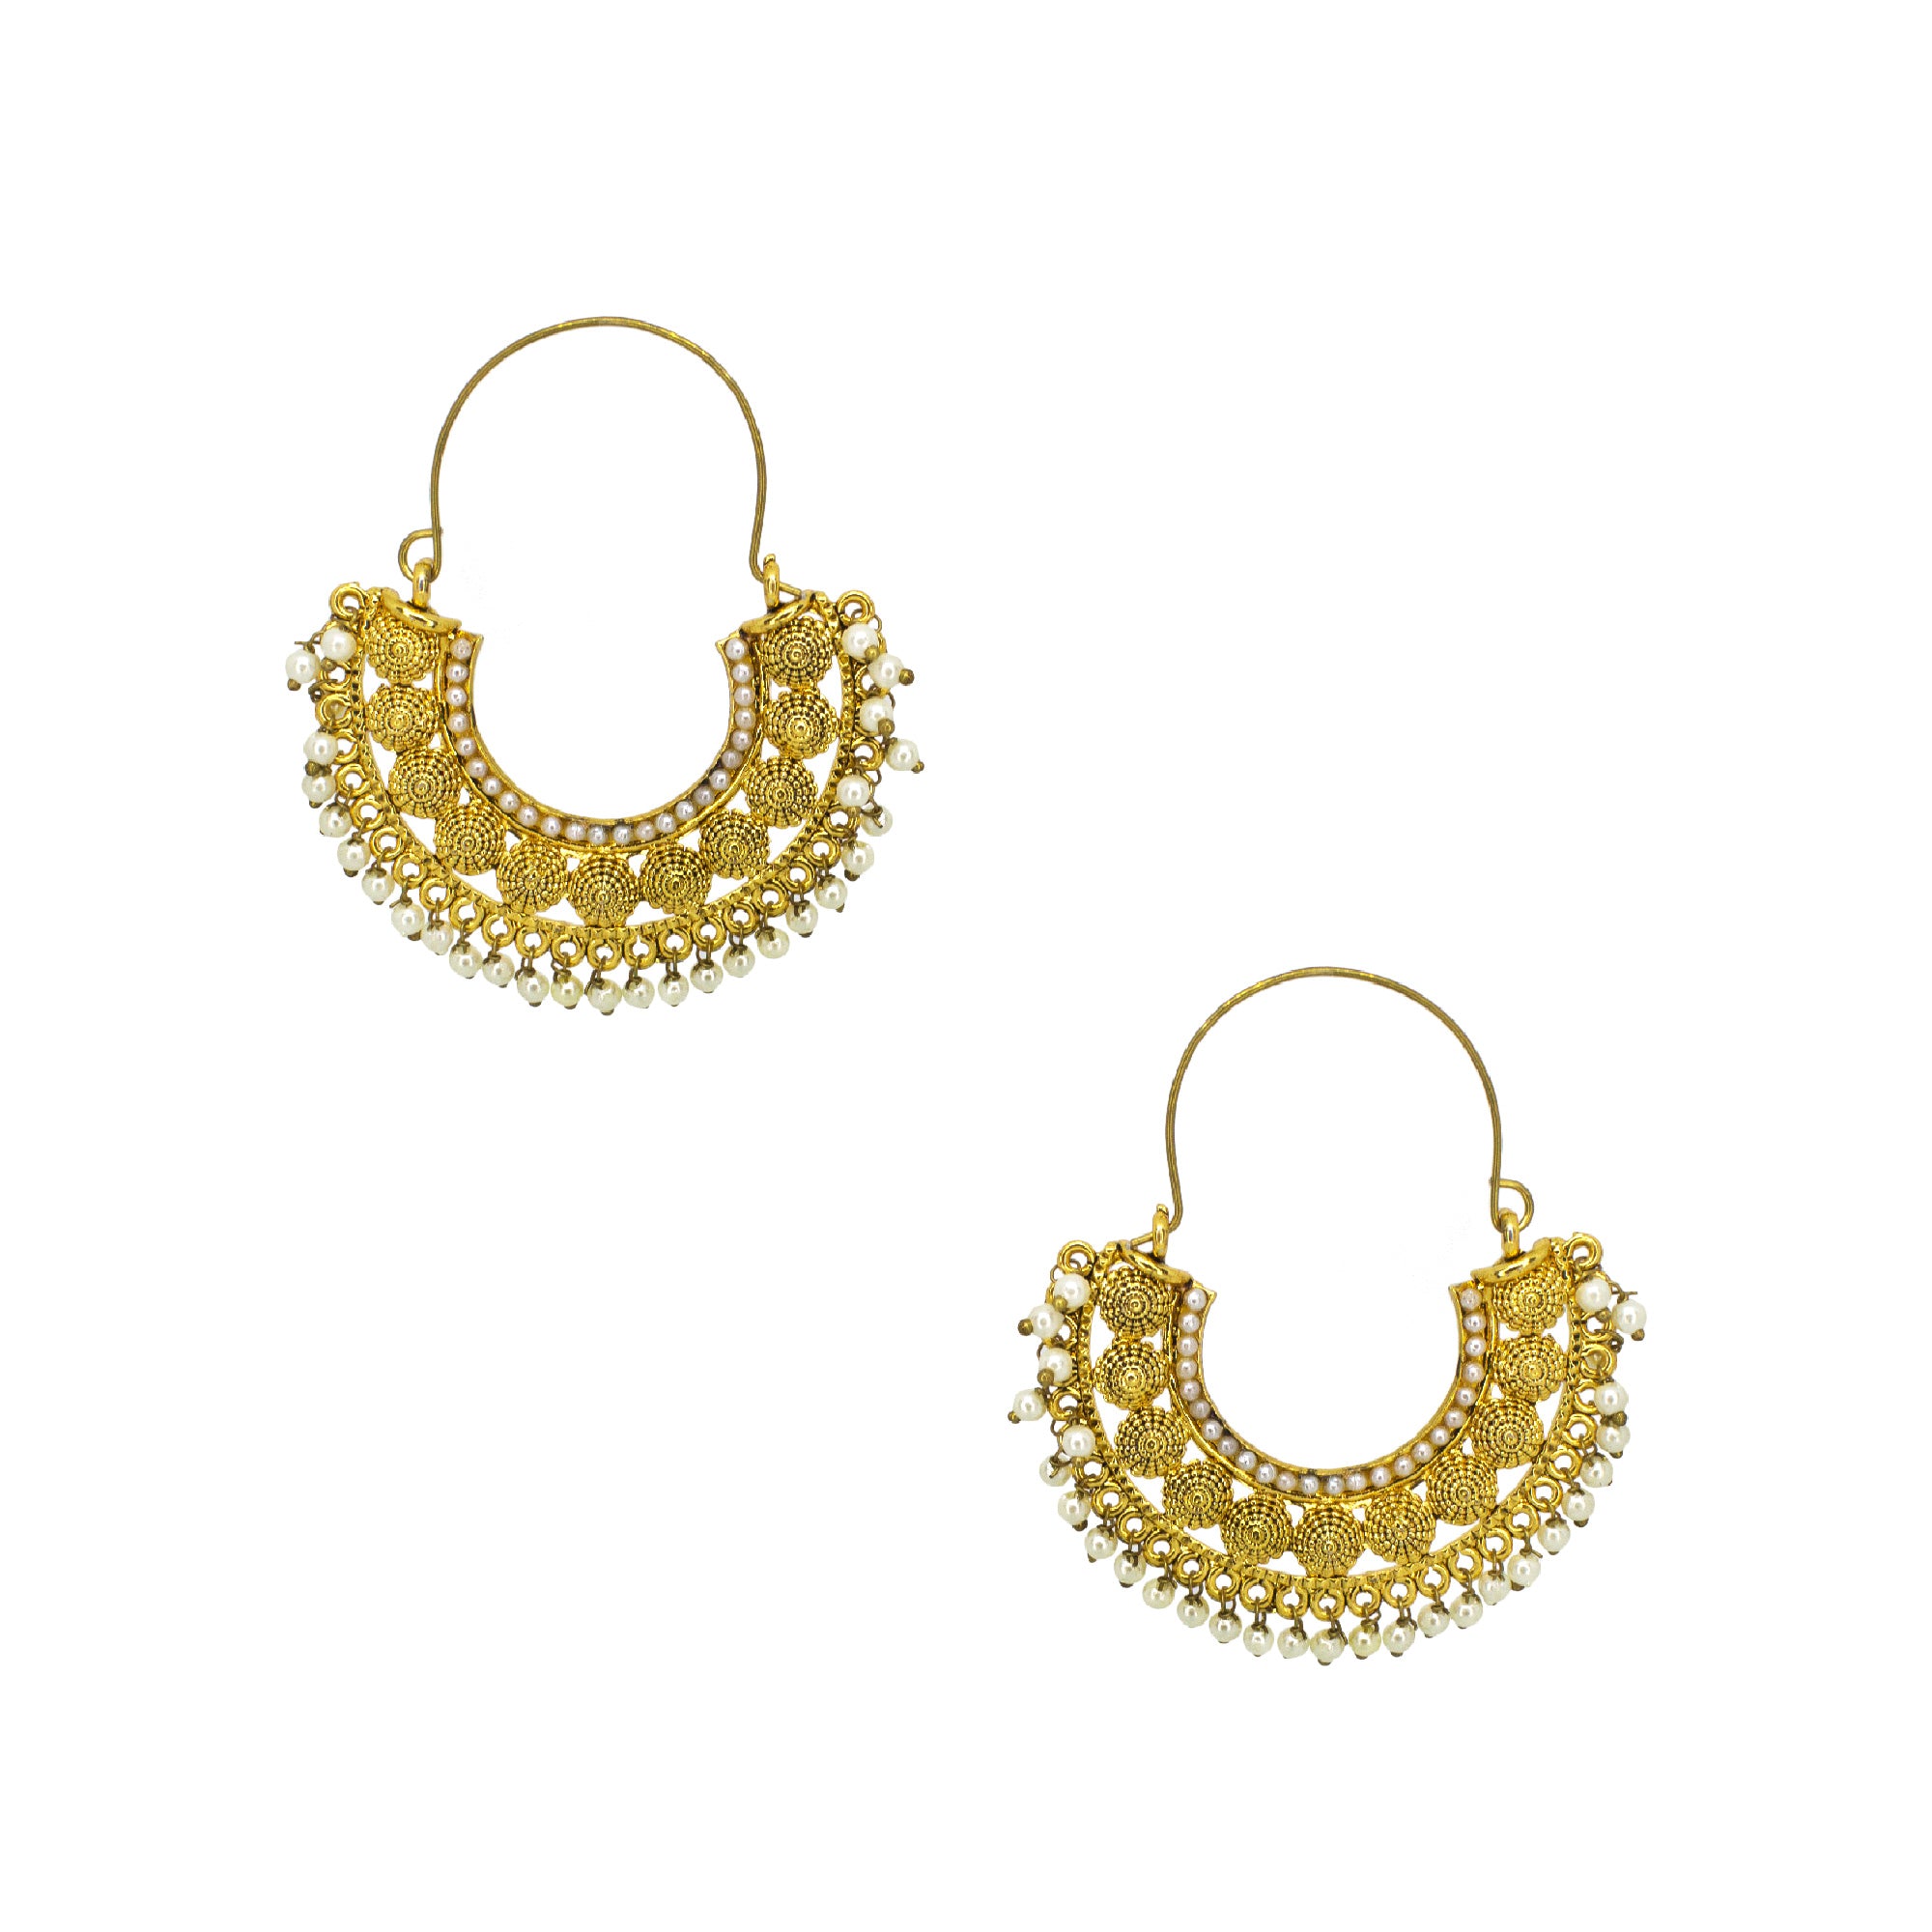 Abhinn Golden Plated Temple Design With White Beads Hoop Earrings For Women